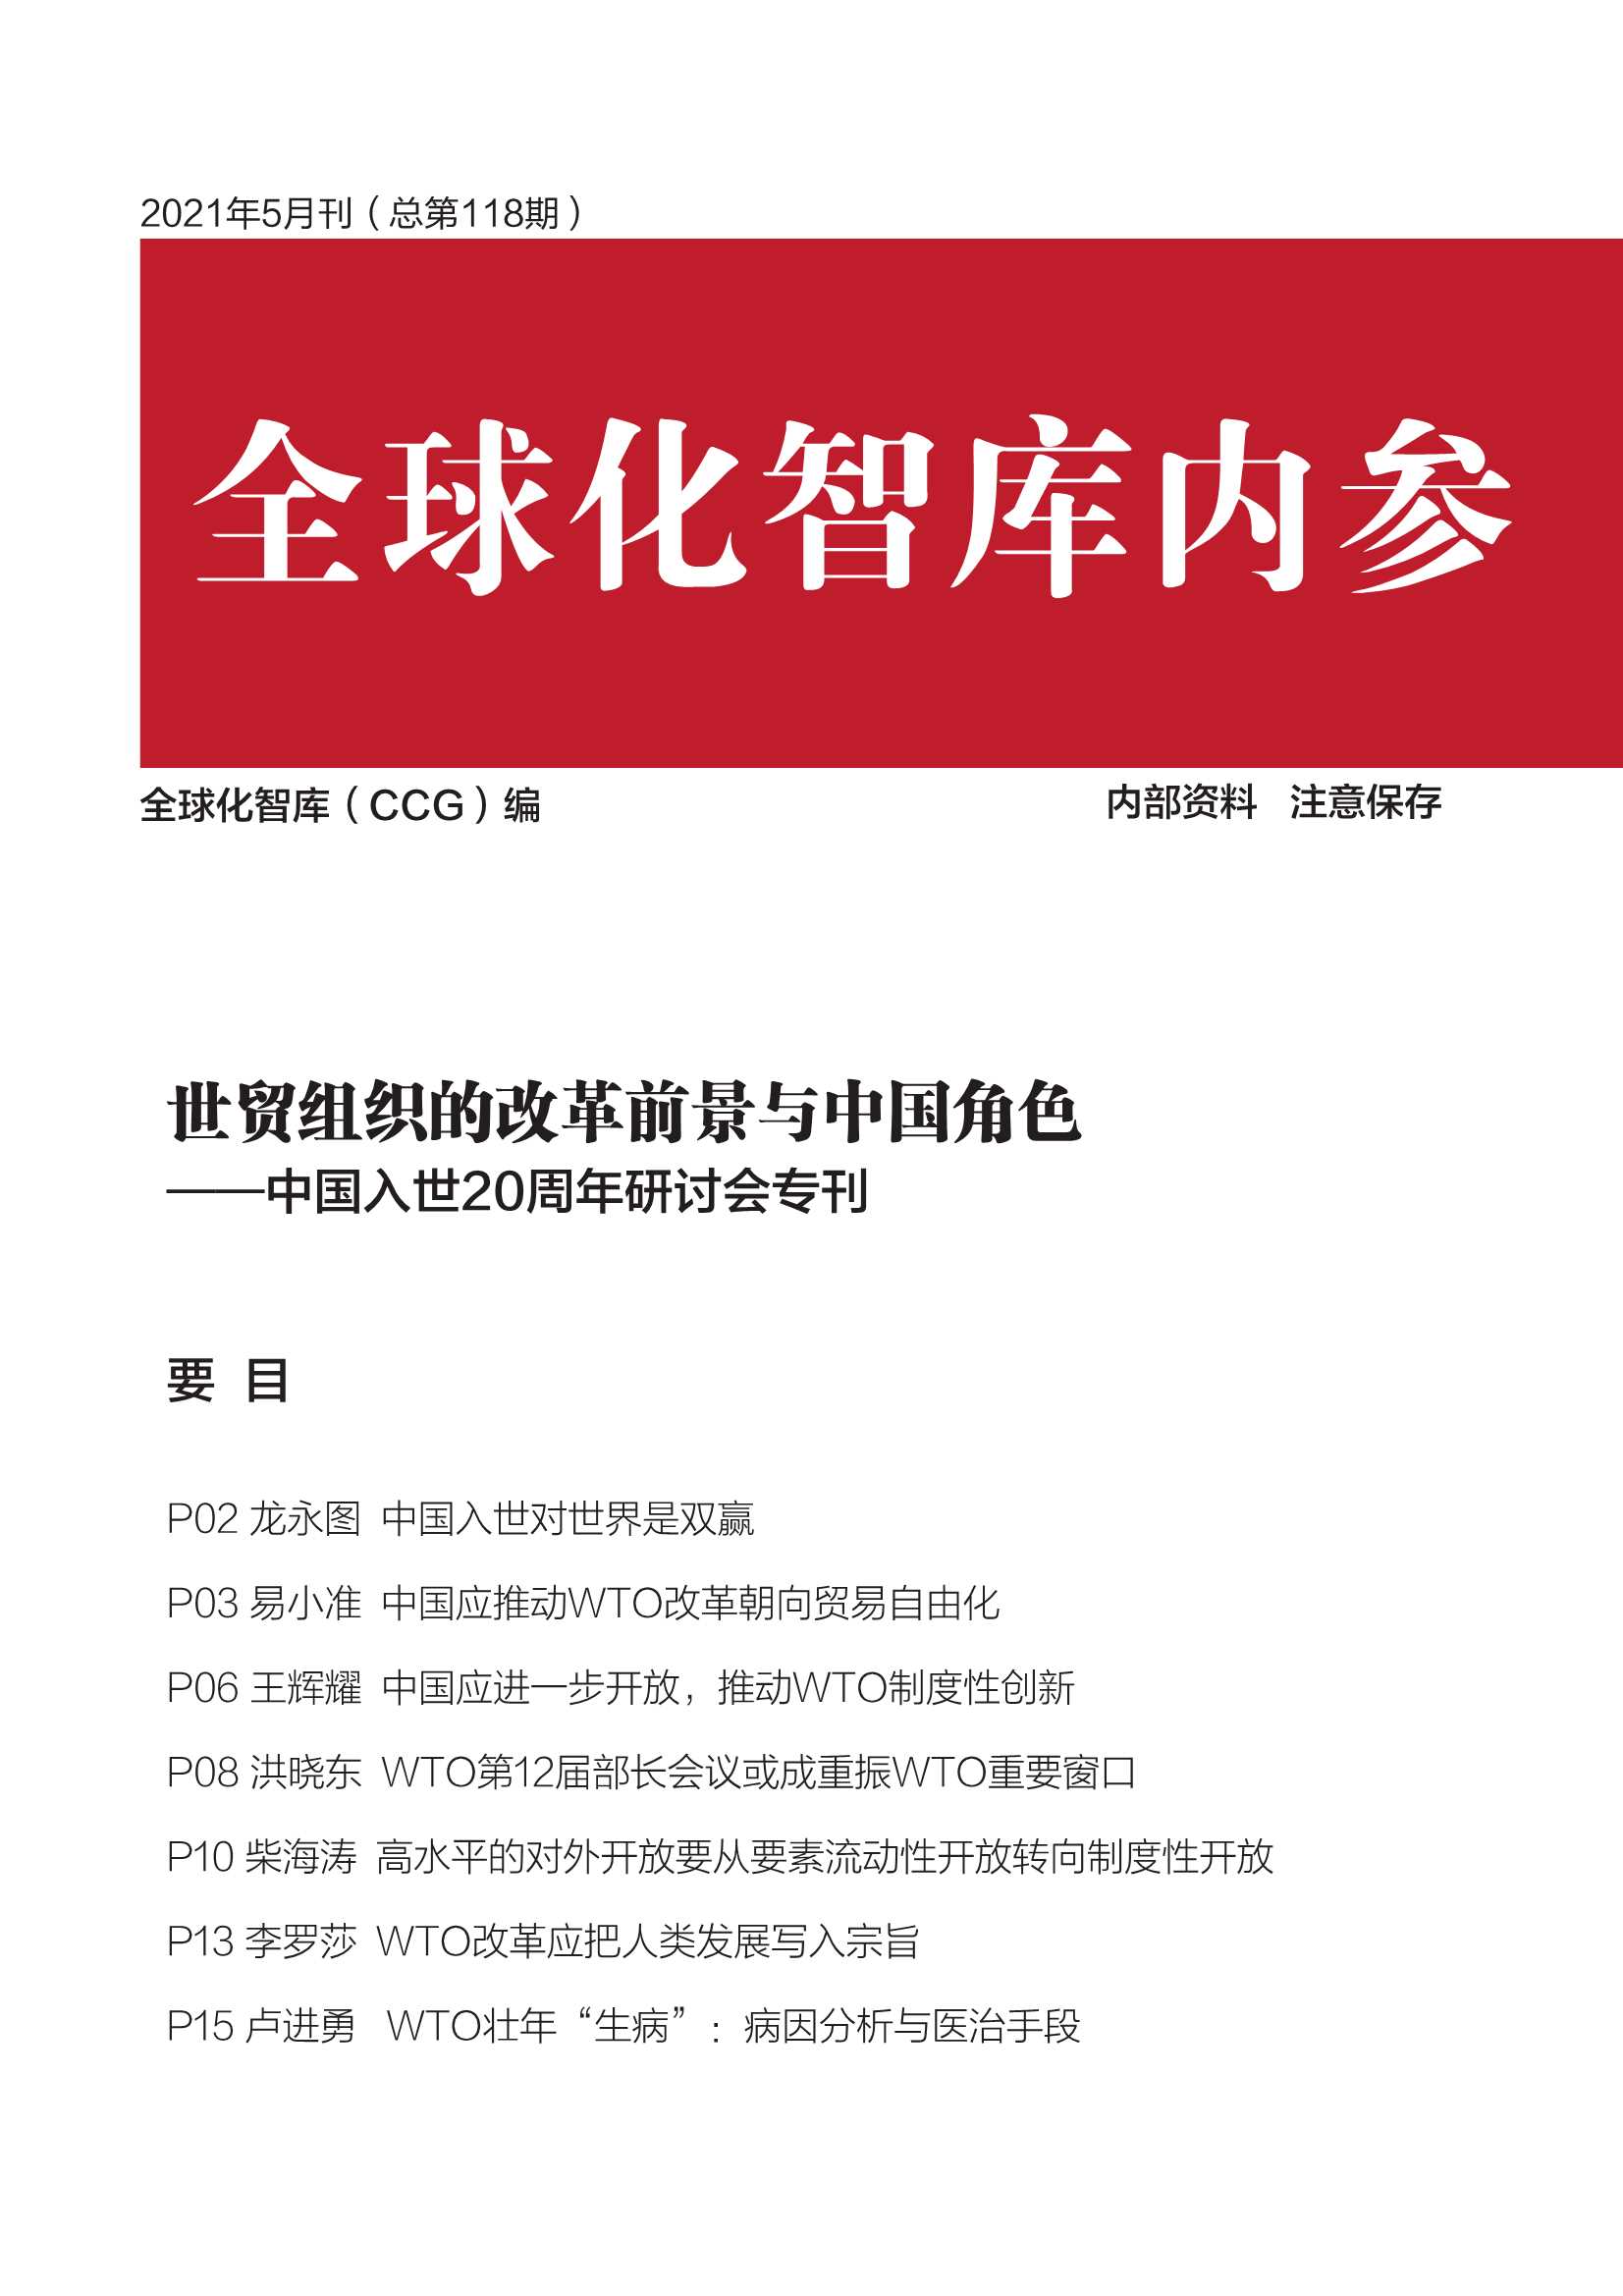 全球化智库-世贸组织的改革前景与中国角色——中国入世20周年研讨会专刊-2021.07-25页